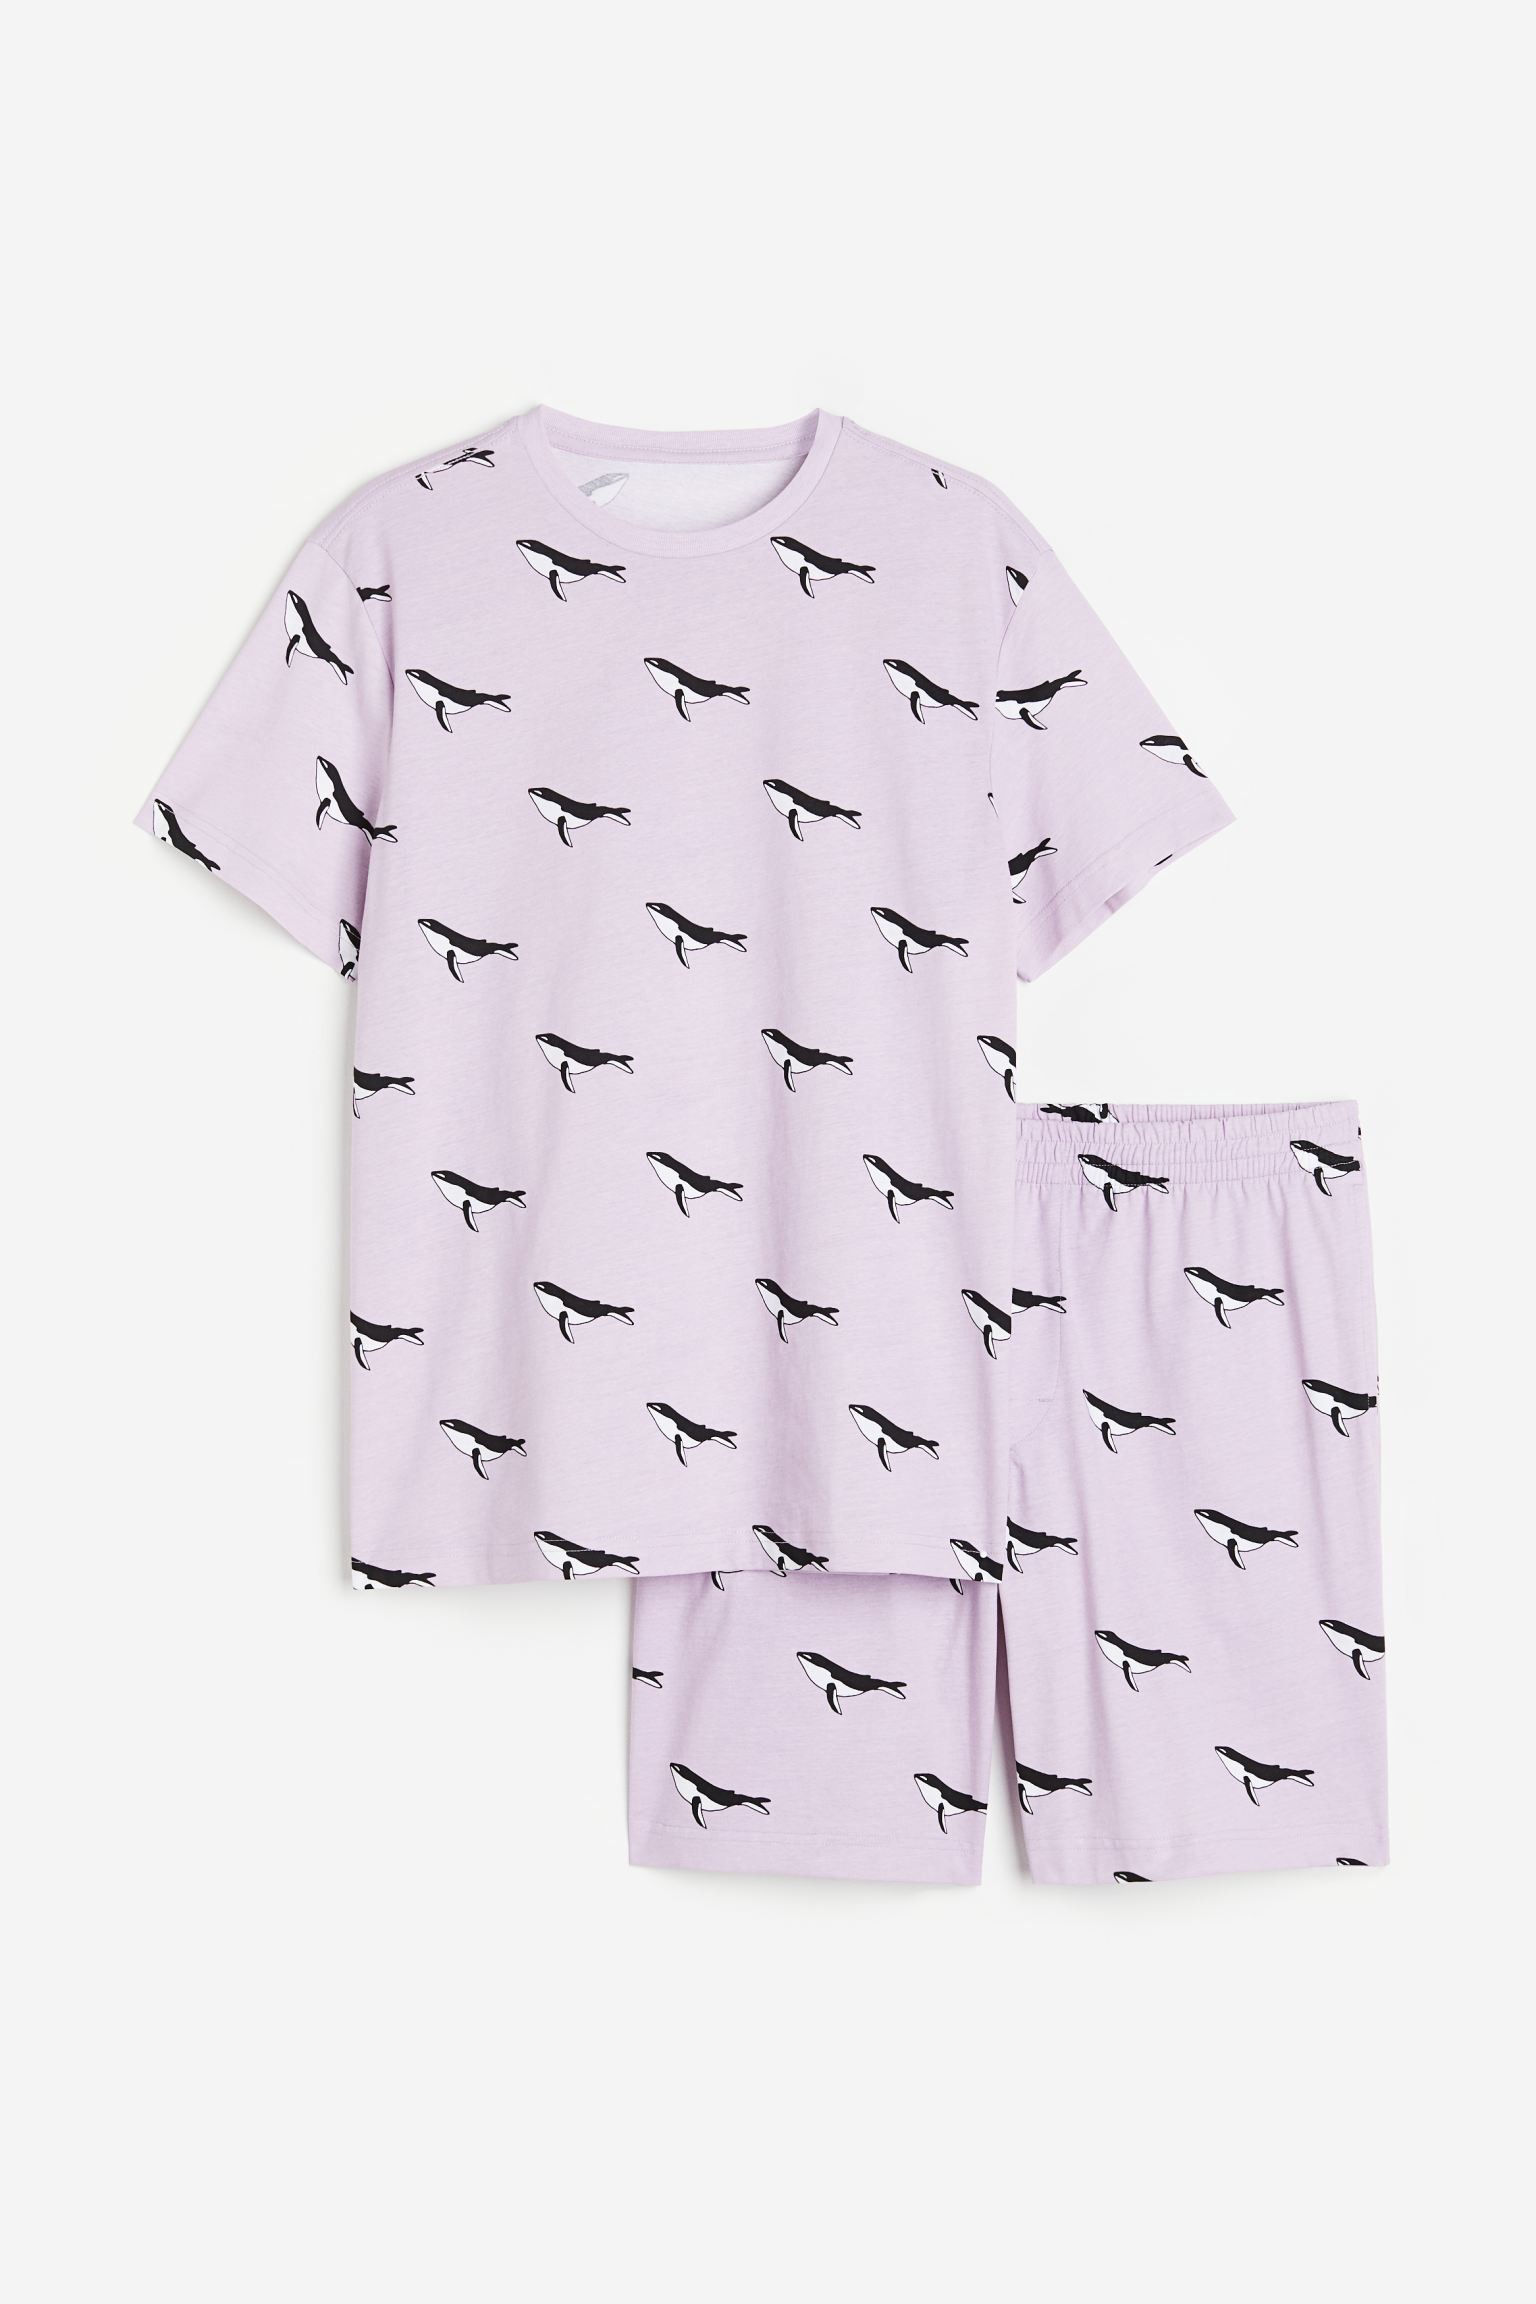 H&M Home Піжама з футболкою та шортами звичайного покрою, Світлофіолетовий, Різні розміри 1116123007 1116123007